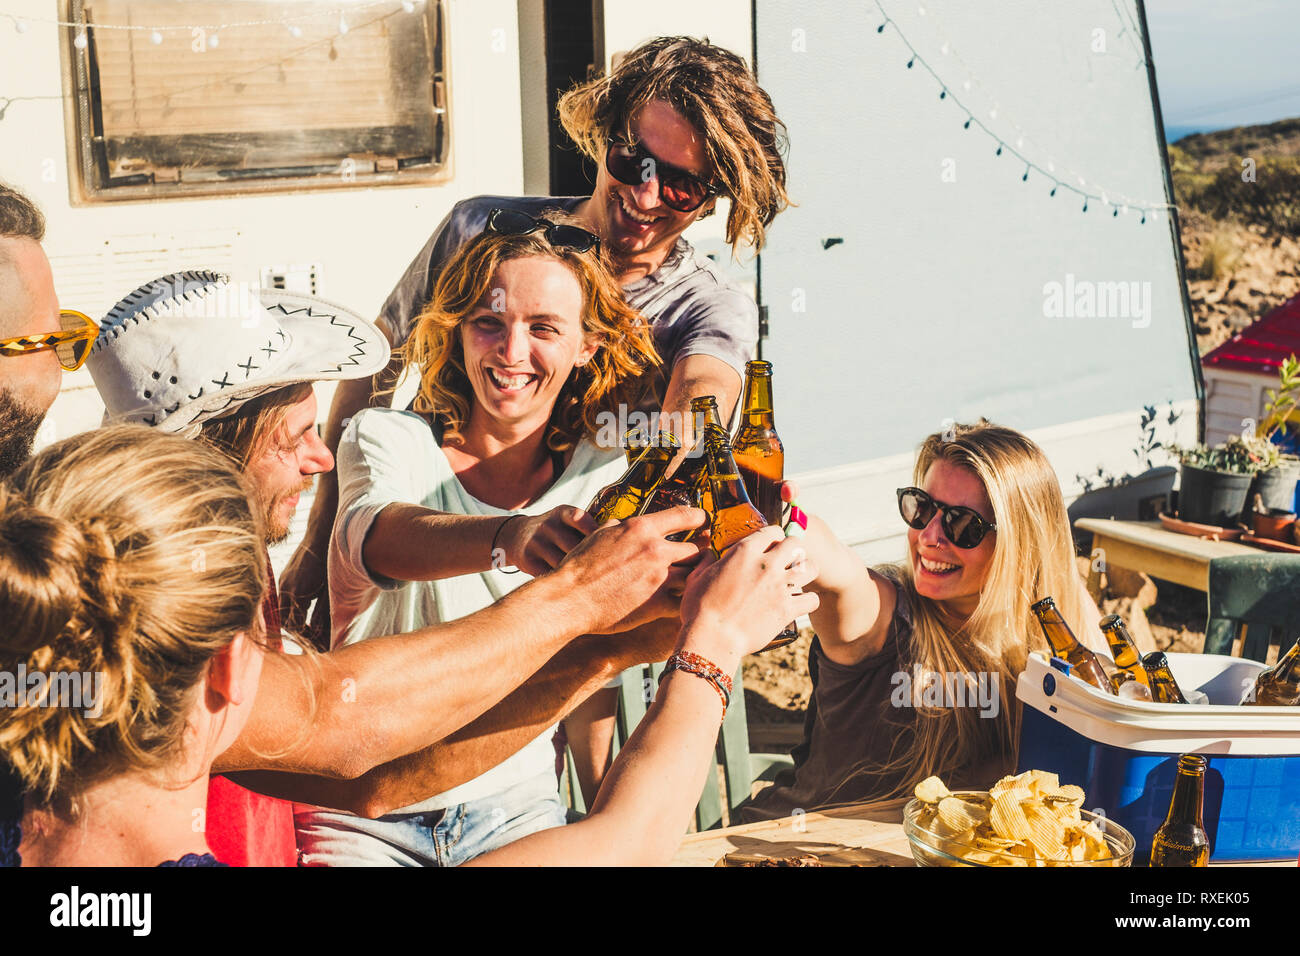 Gruppe von Freunden jugendliche Männer und Frauen Klirren und Toasten in funtogether in Outdoor Ferien Feier unter der Sonne - viel Spaß Konzept Stockfoto